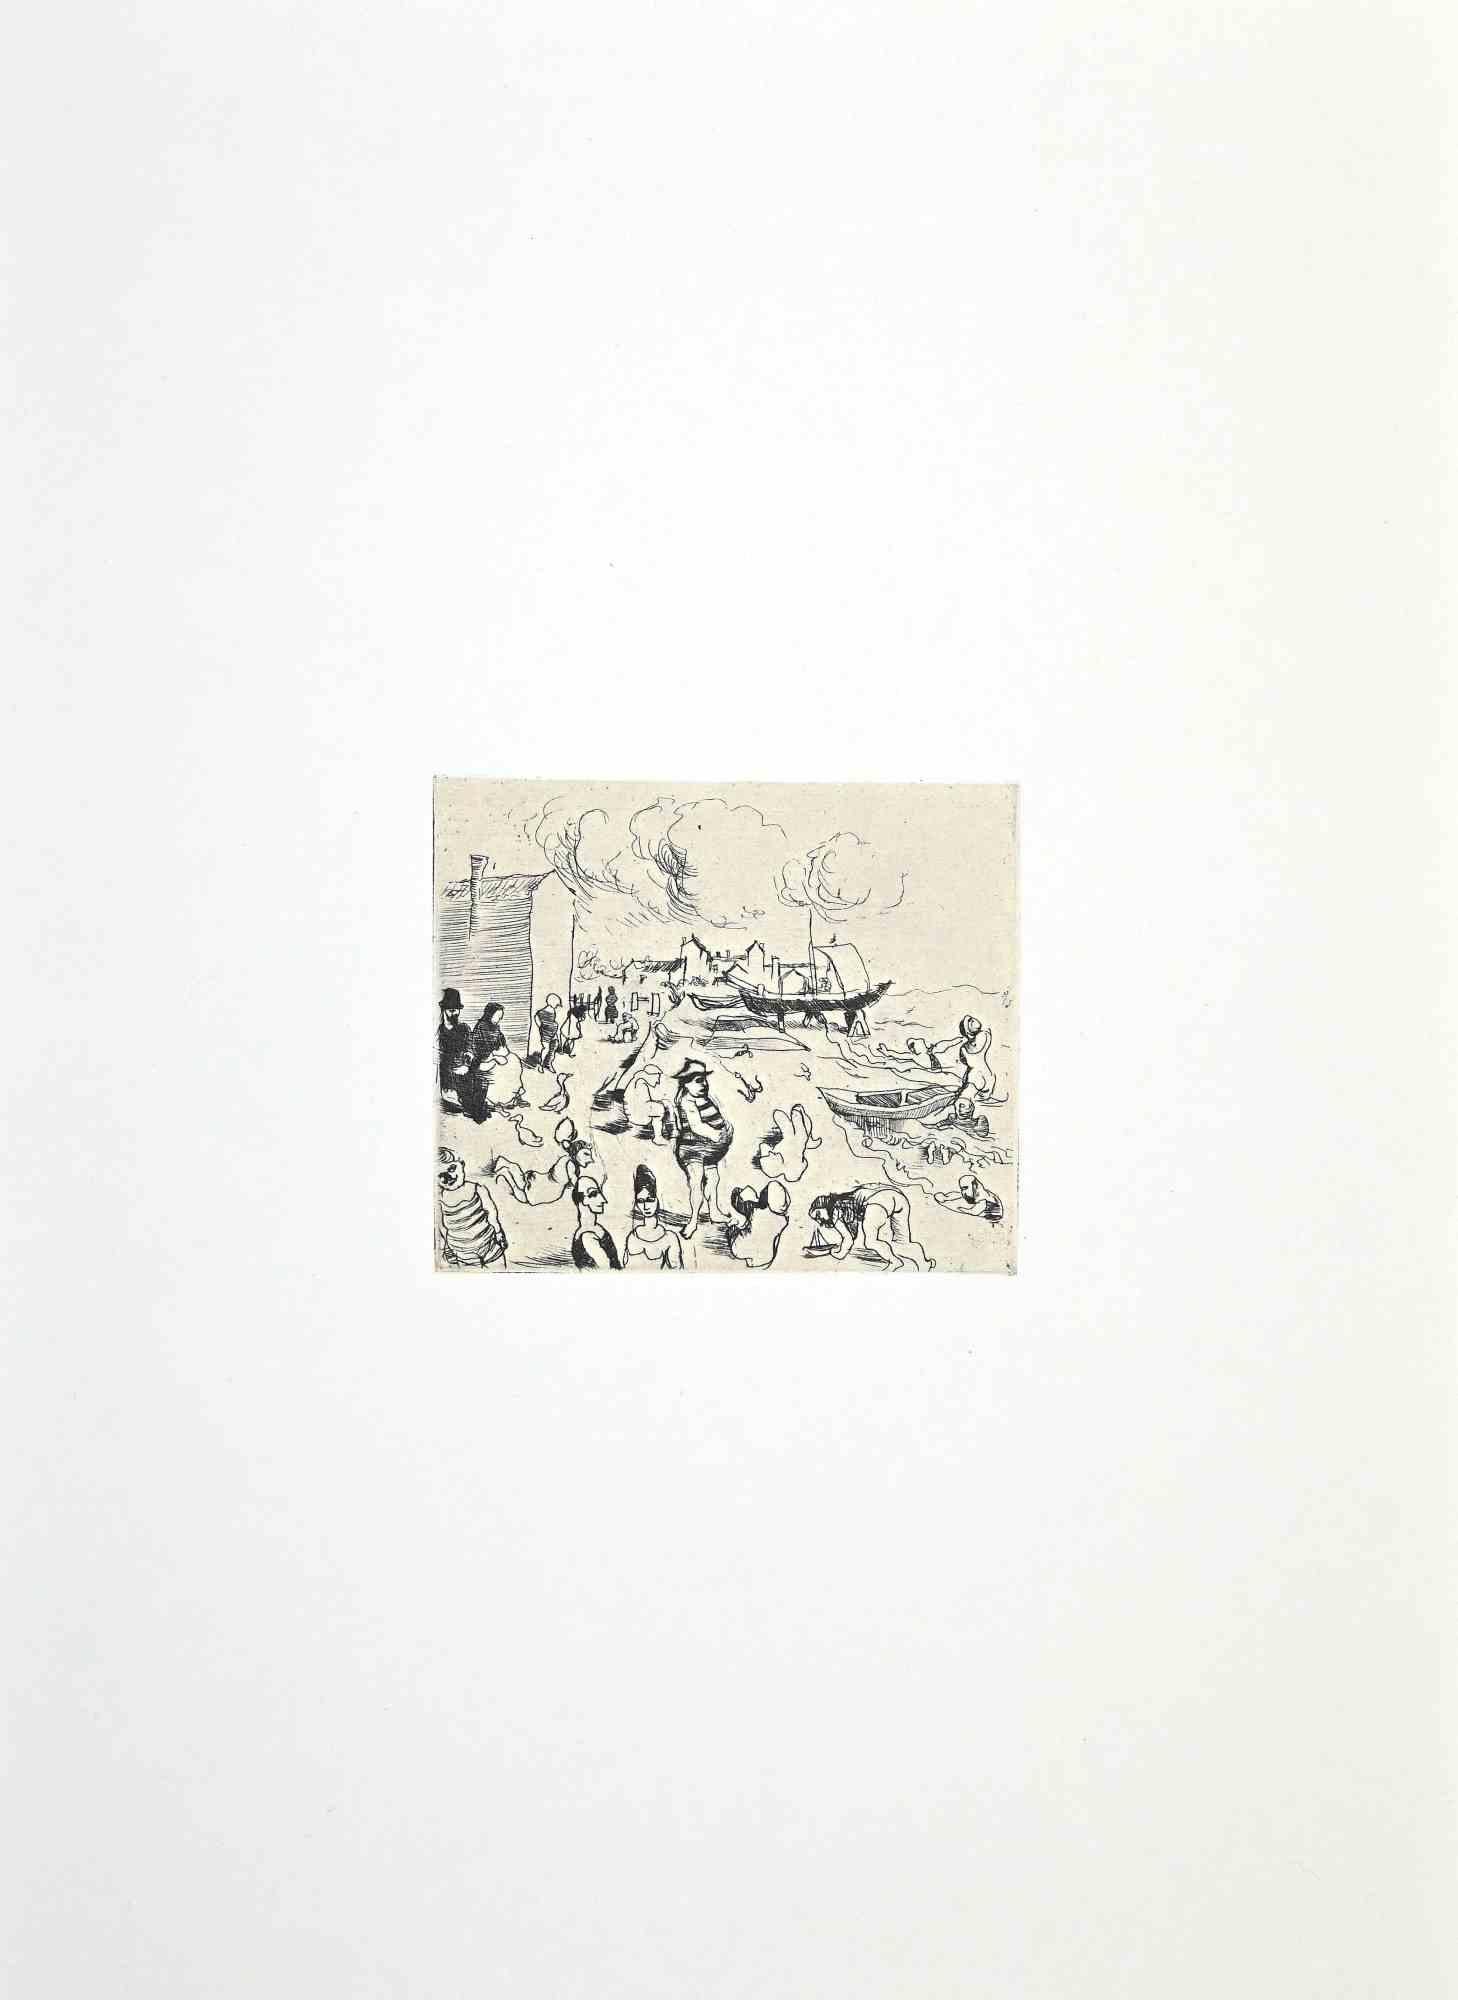 À la mer est une impression offset d'époque sur papier de couleur ivoire, réalisée par Franco Gentilini (peintre italien, 1909-1981) dans les années 1970.

L'état de conservation des œuvres d'art est excellent.

Franco Gentilini ( Peintre italien,